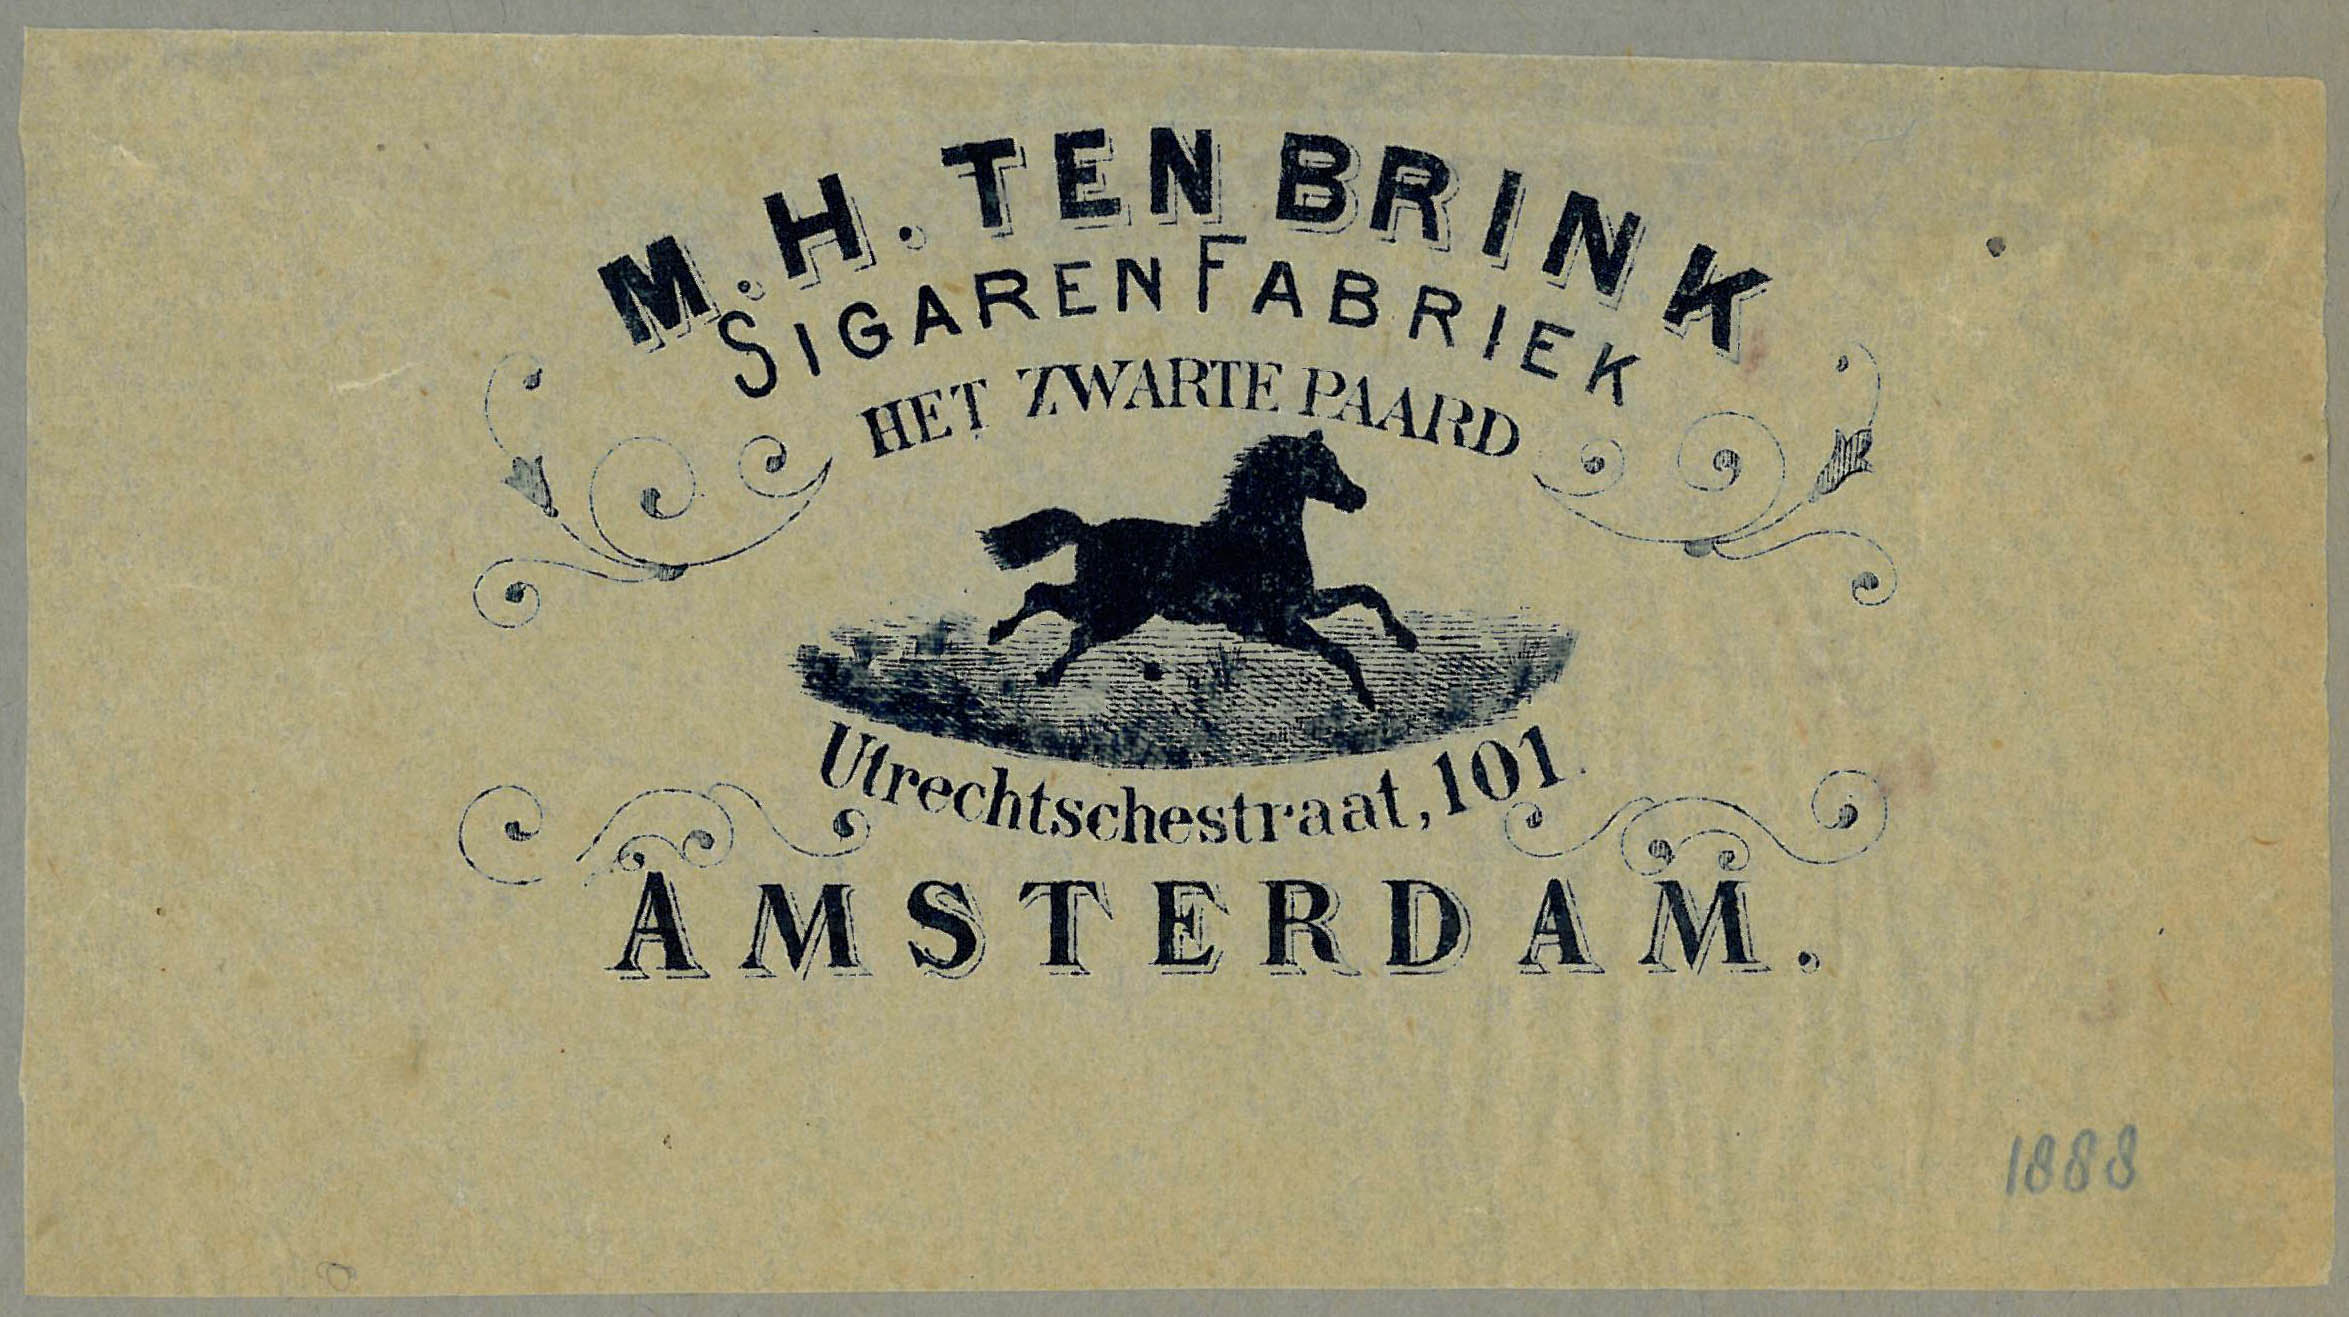 35-26.606  vig-sigarenzakje-paard-amsterdam